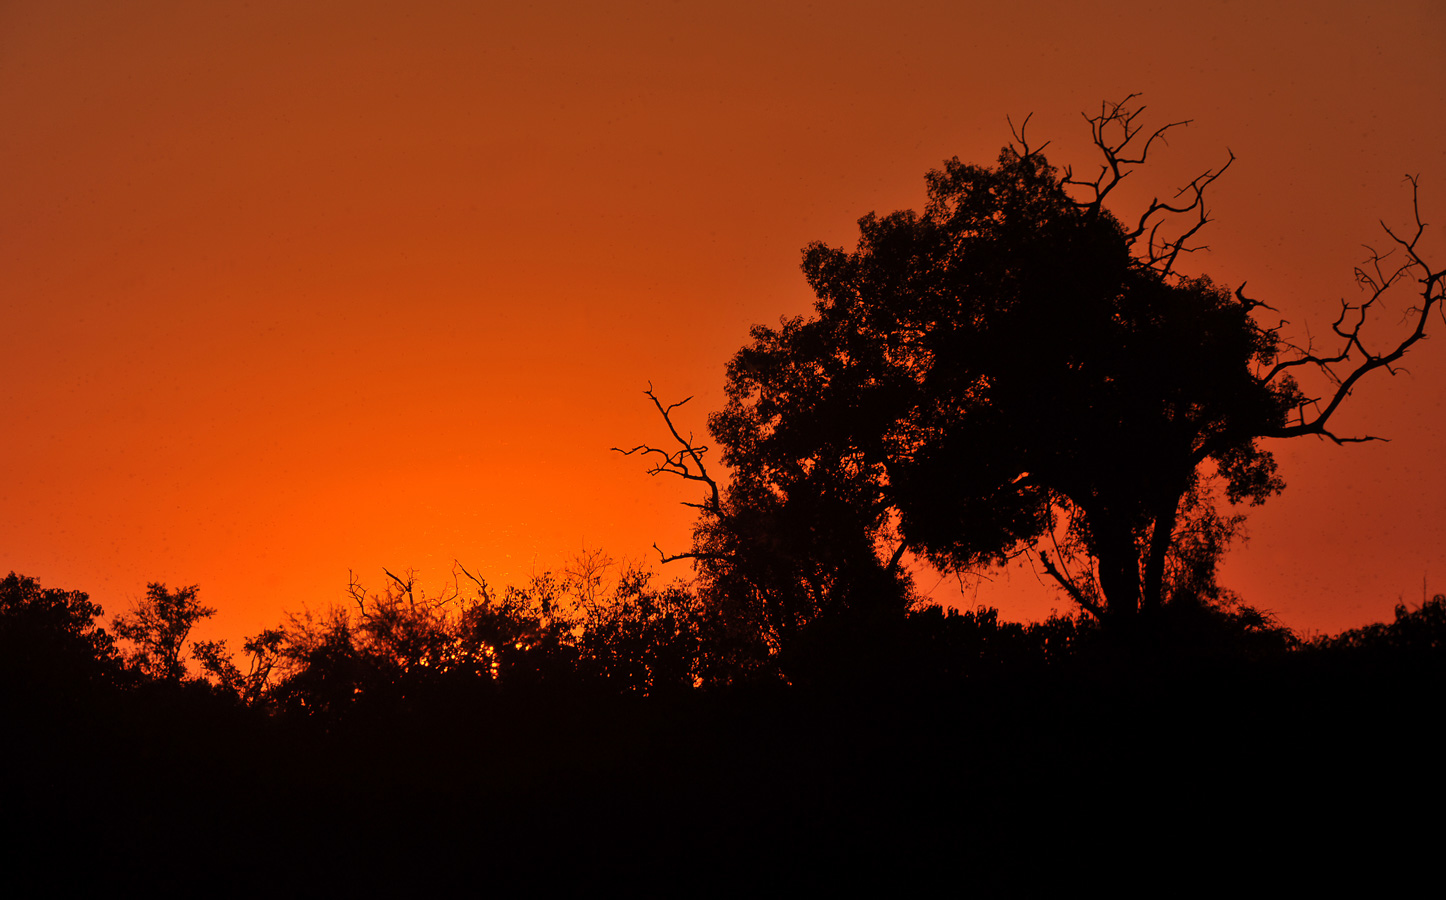 Chobe National Park [550 mm, 1/1250 sec at f / 8.0, ISO 250]